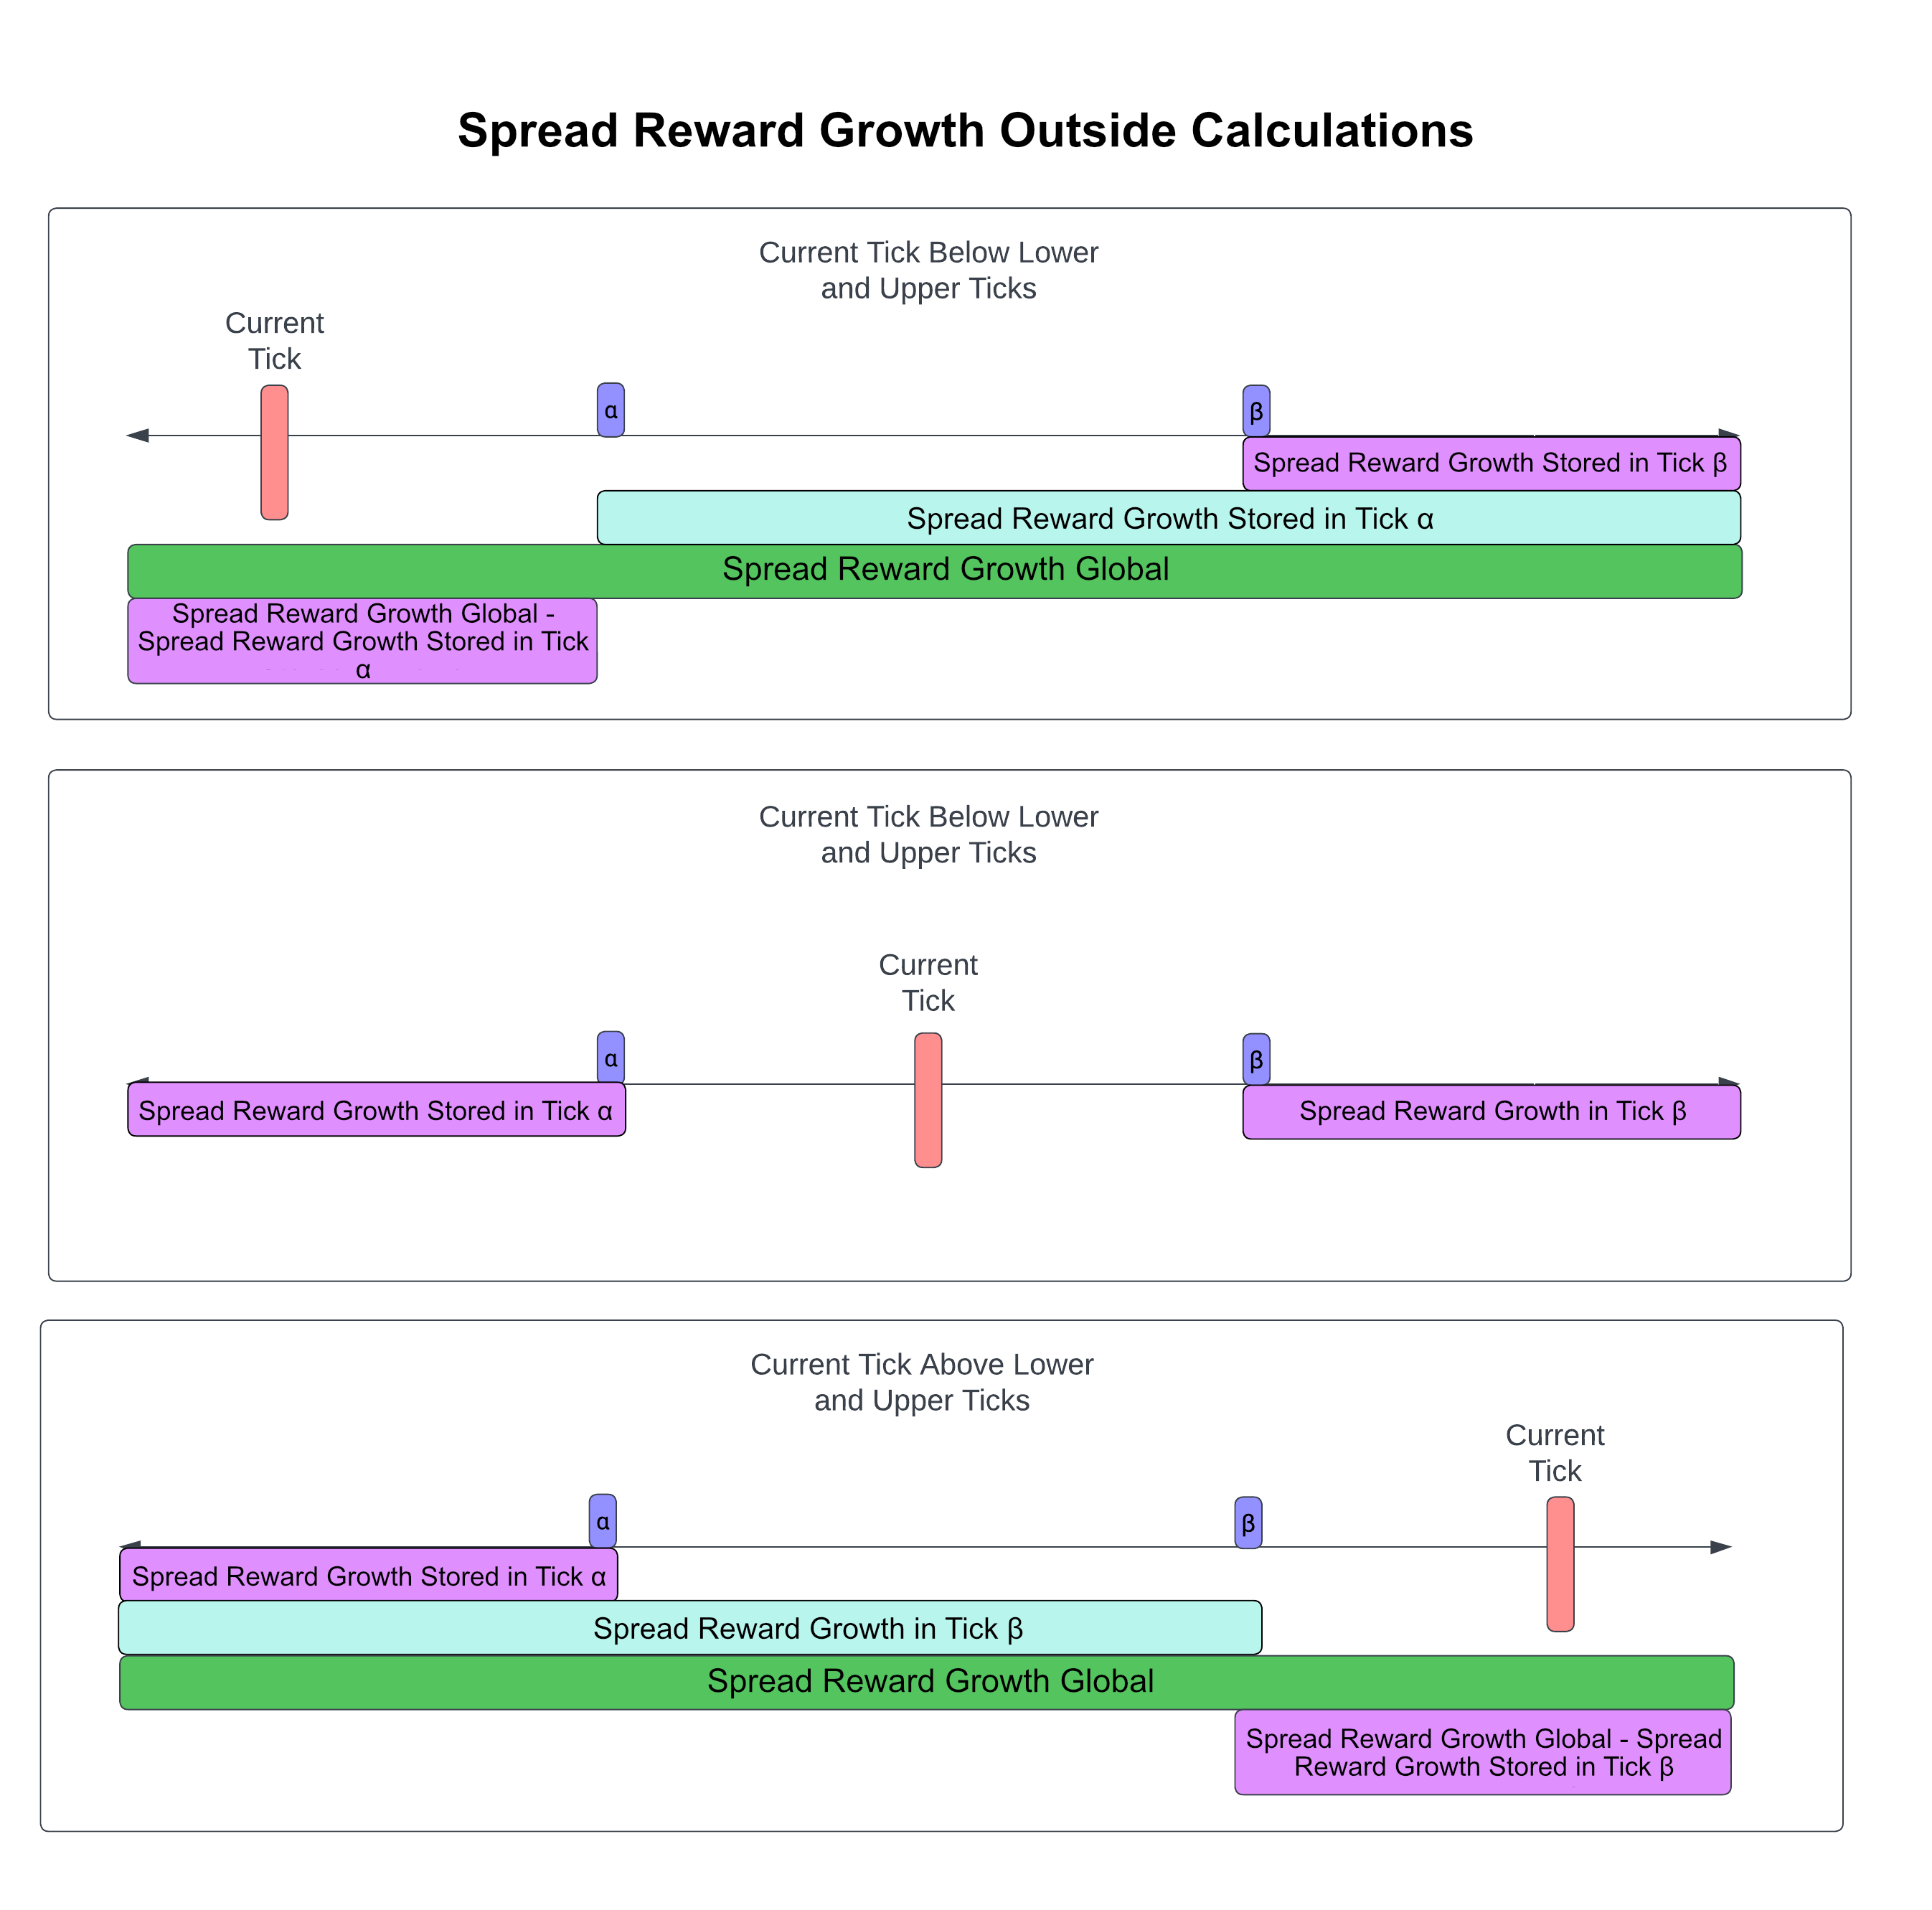 Spread Reward Growth Outside Calculations